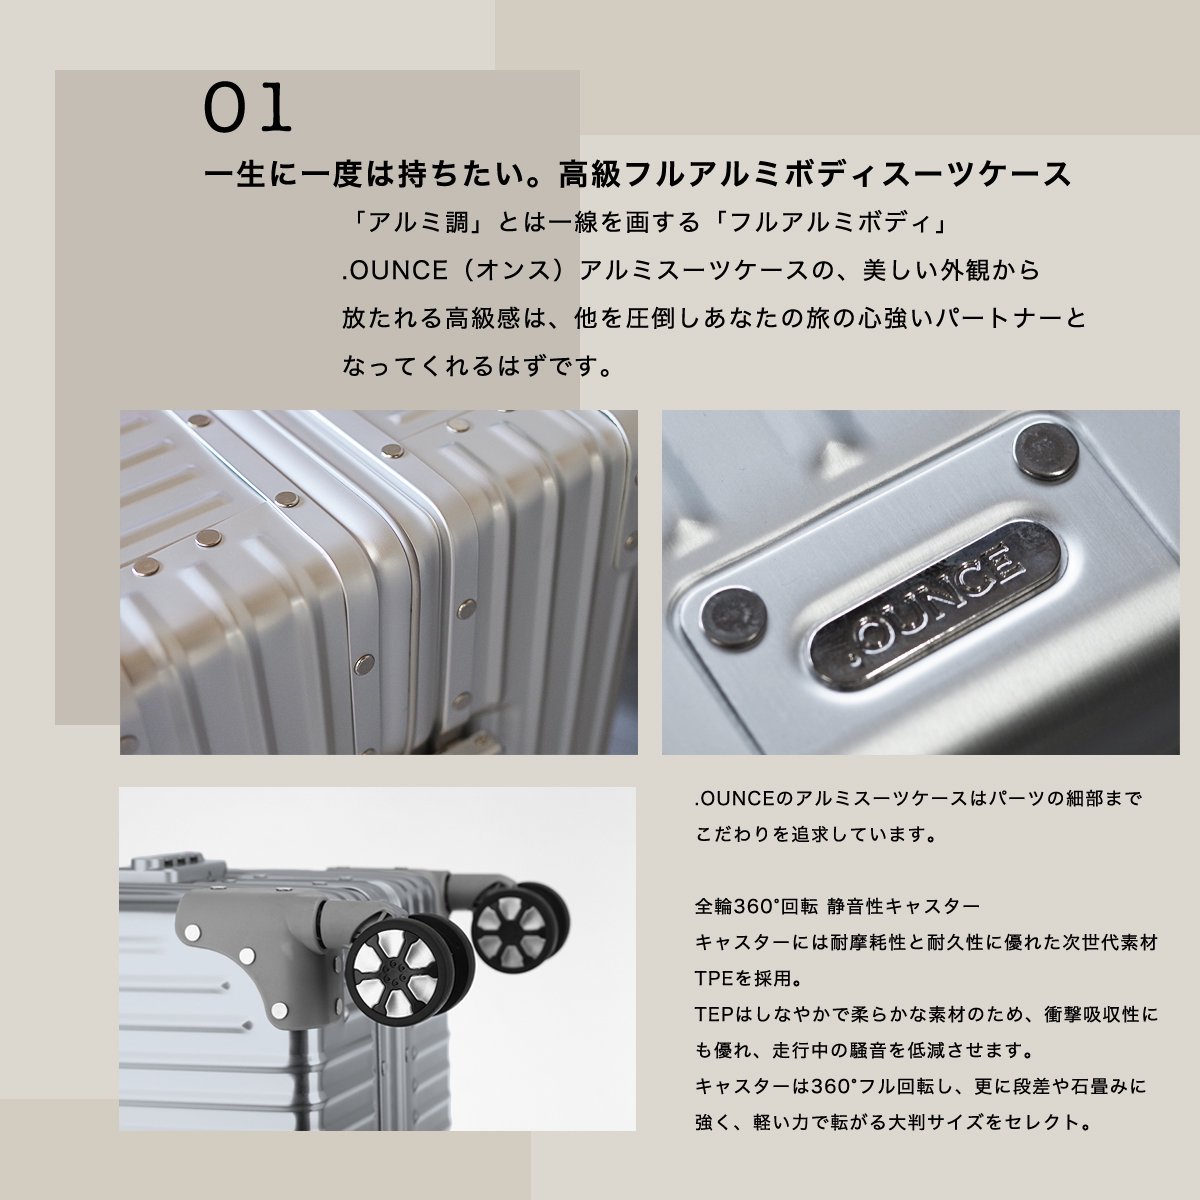 【STYLISH JAPAN】アルミニウムボディ スーツケース Lサイズ